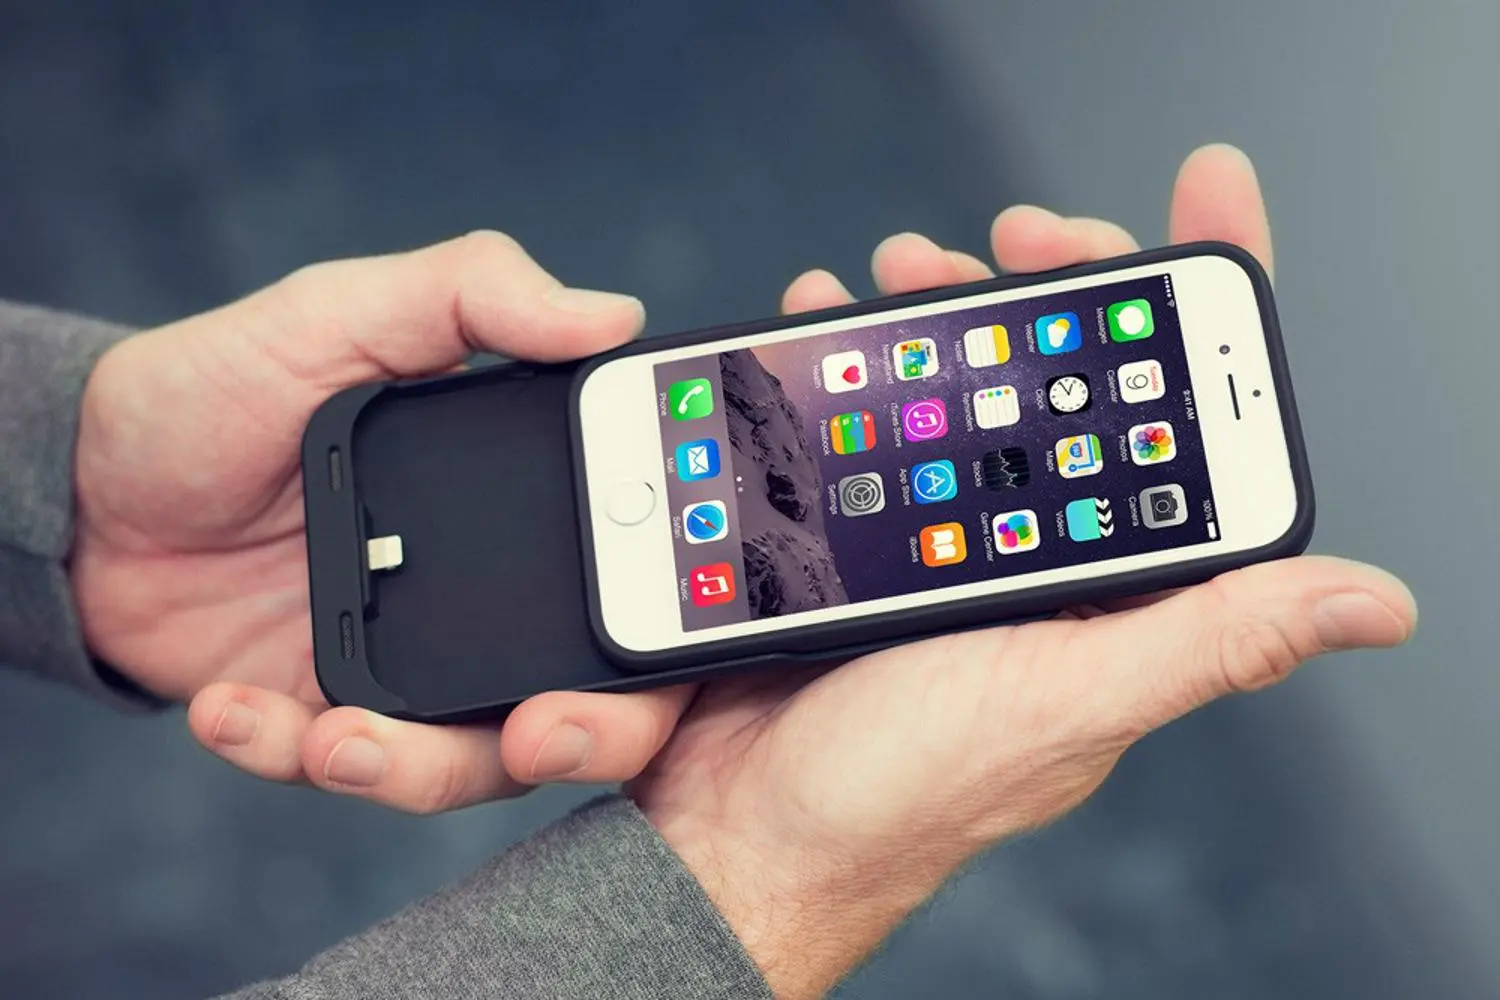 Apple rischia una multa da 2 miliardi di dollari per il rallentamento di iPhone 6 e iPhone 6s